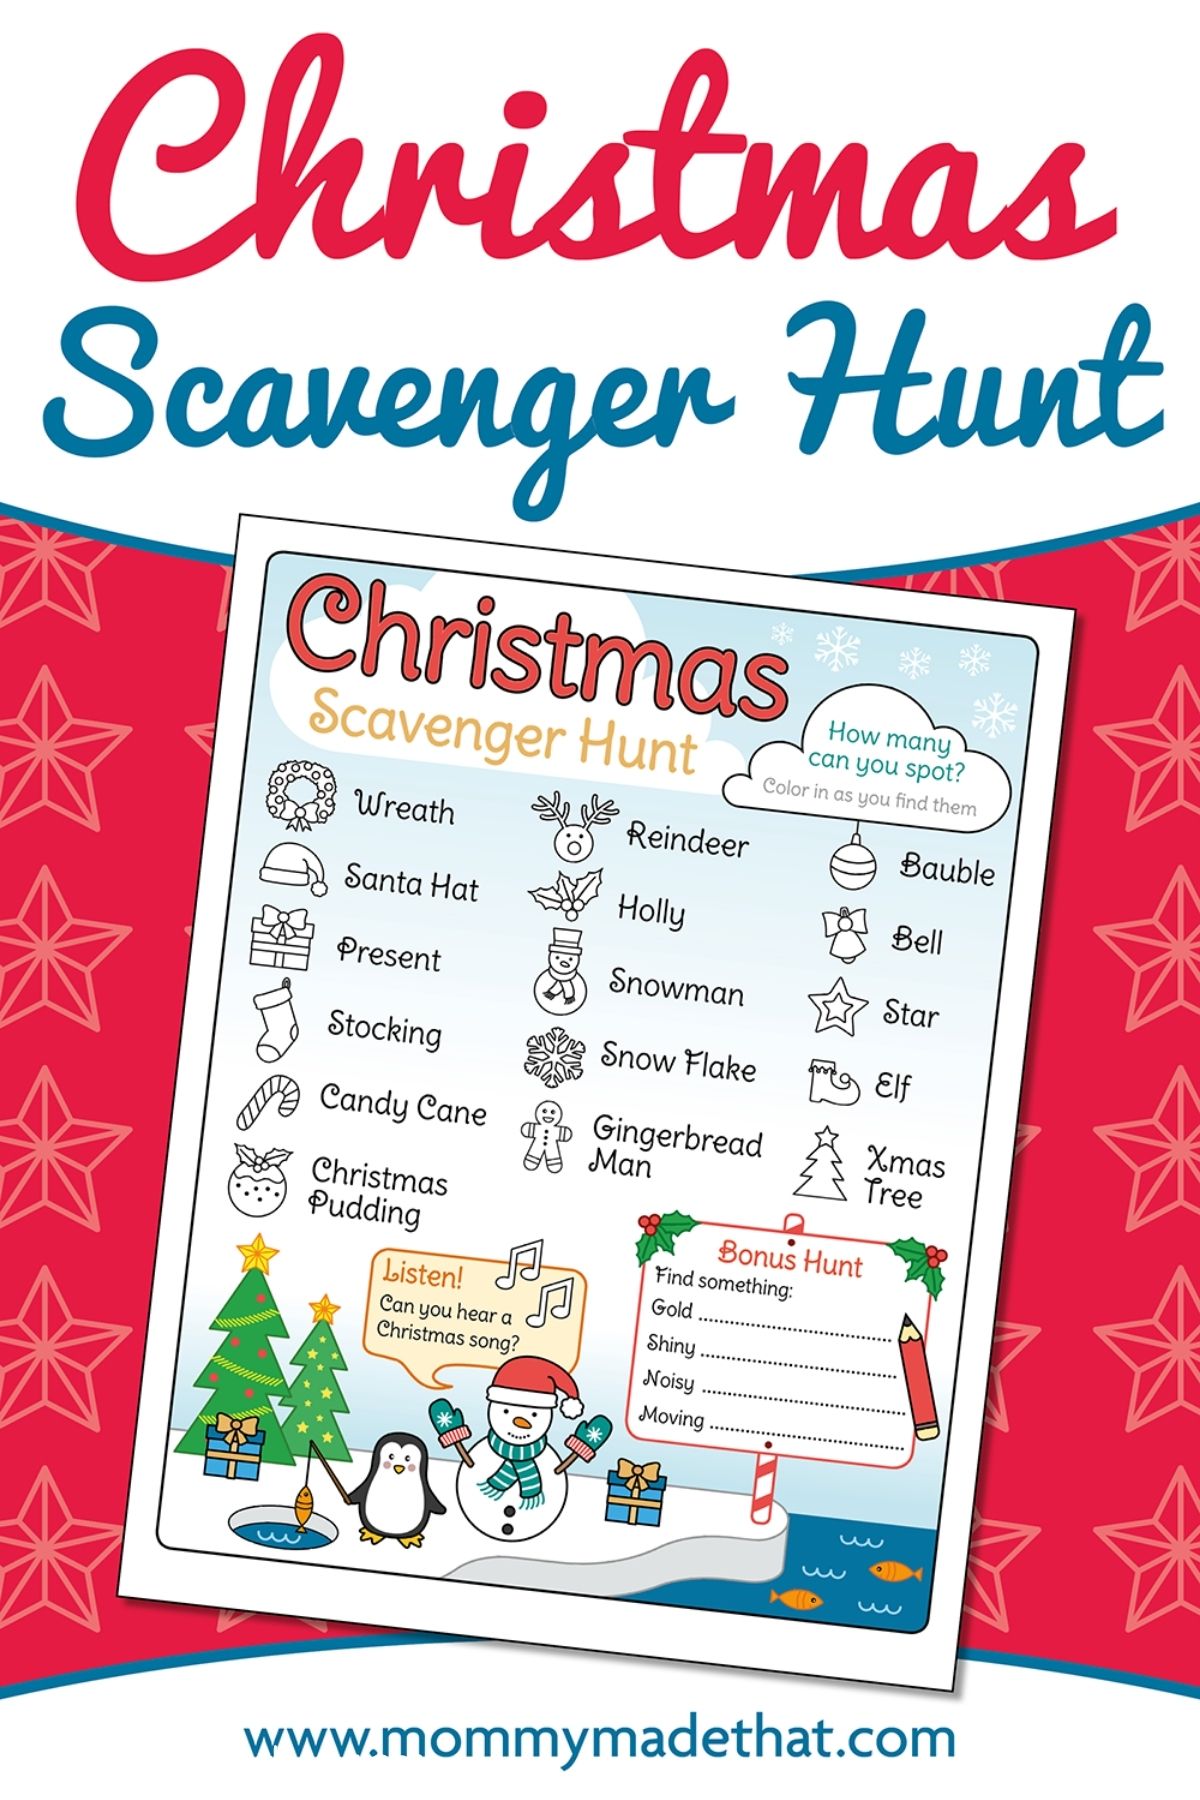 Free printable Christmas Scavenger Hunt PDF